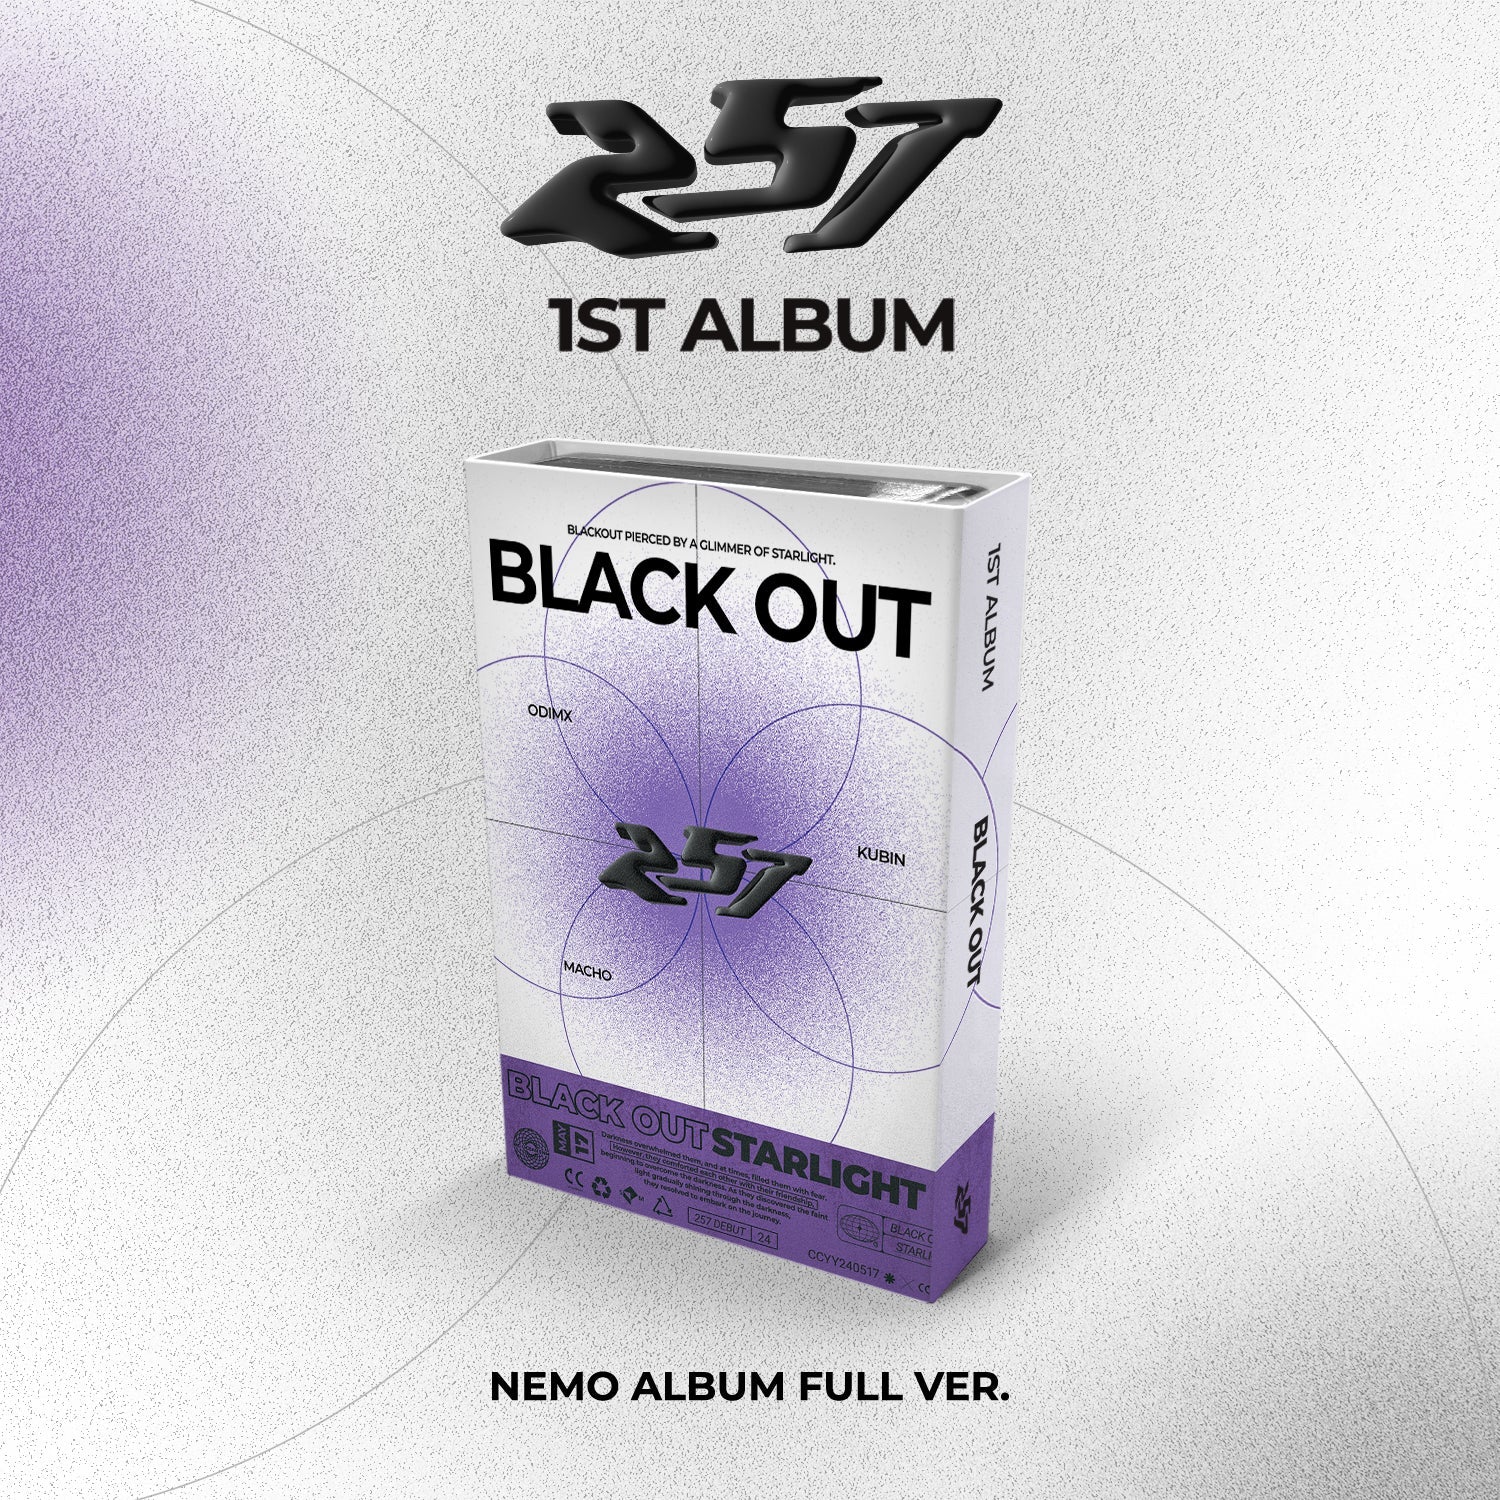 257 - 1ST ALBUM [BLACK OUT] Nemo Album Full Ver.